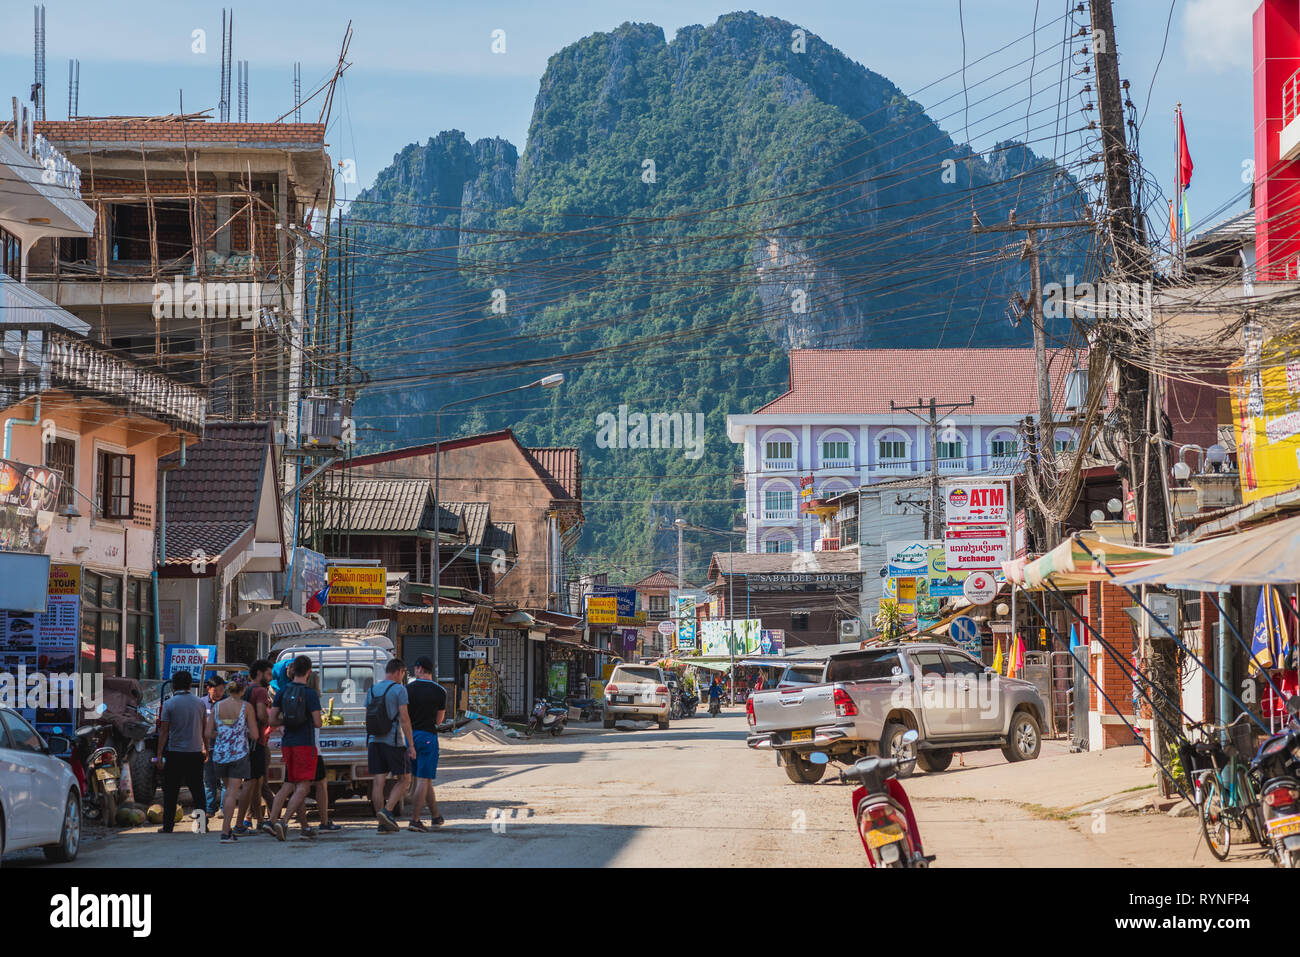 Vang Vieng, Laos - 28 décembre 2018 : l'une des principales rues de la ville avec toutes sortes d'entreprise touristique et une grande montagne en arrière-plan. Banque D'Images